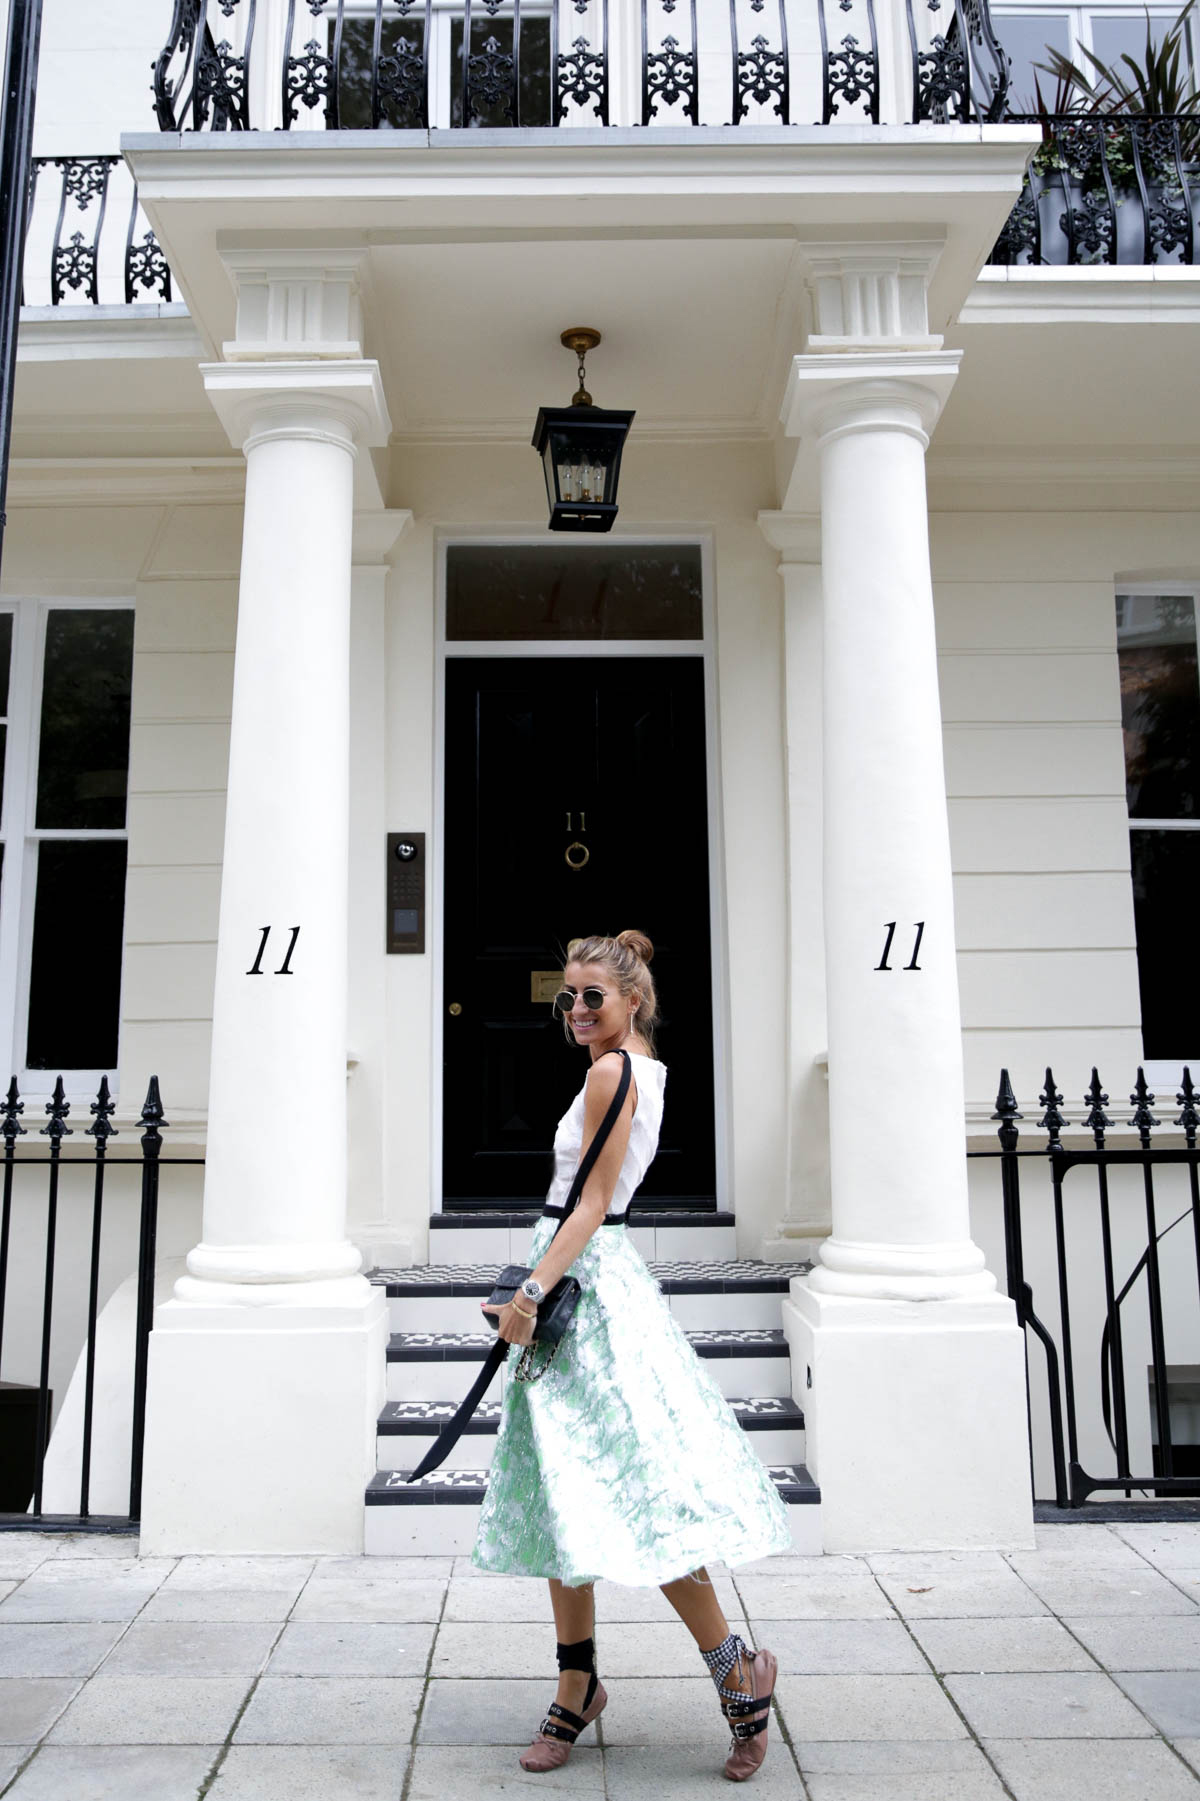 london-londres-dress-vestido-lady-lfw-fashion-week-emilio-de-la-morena-miu-miu-ballerinas-chanel-vintage-bag-look-bartabac-outfit-moda-blogger-21